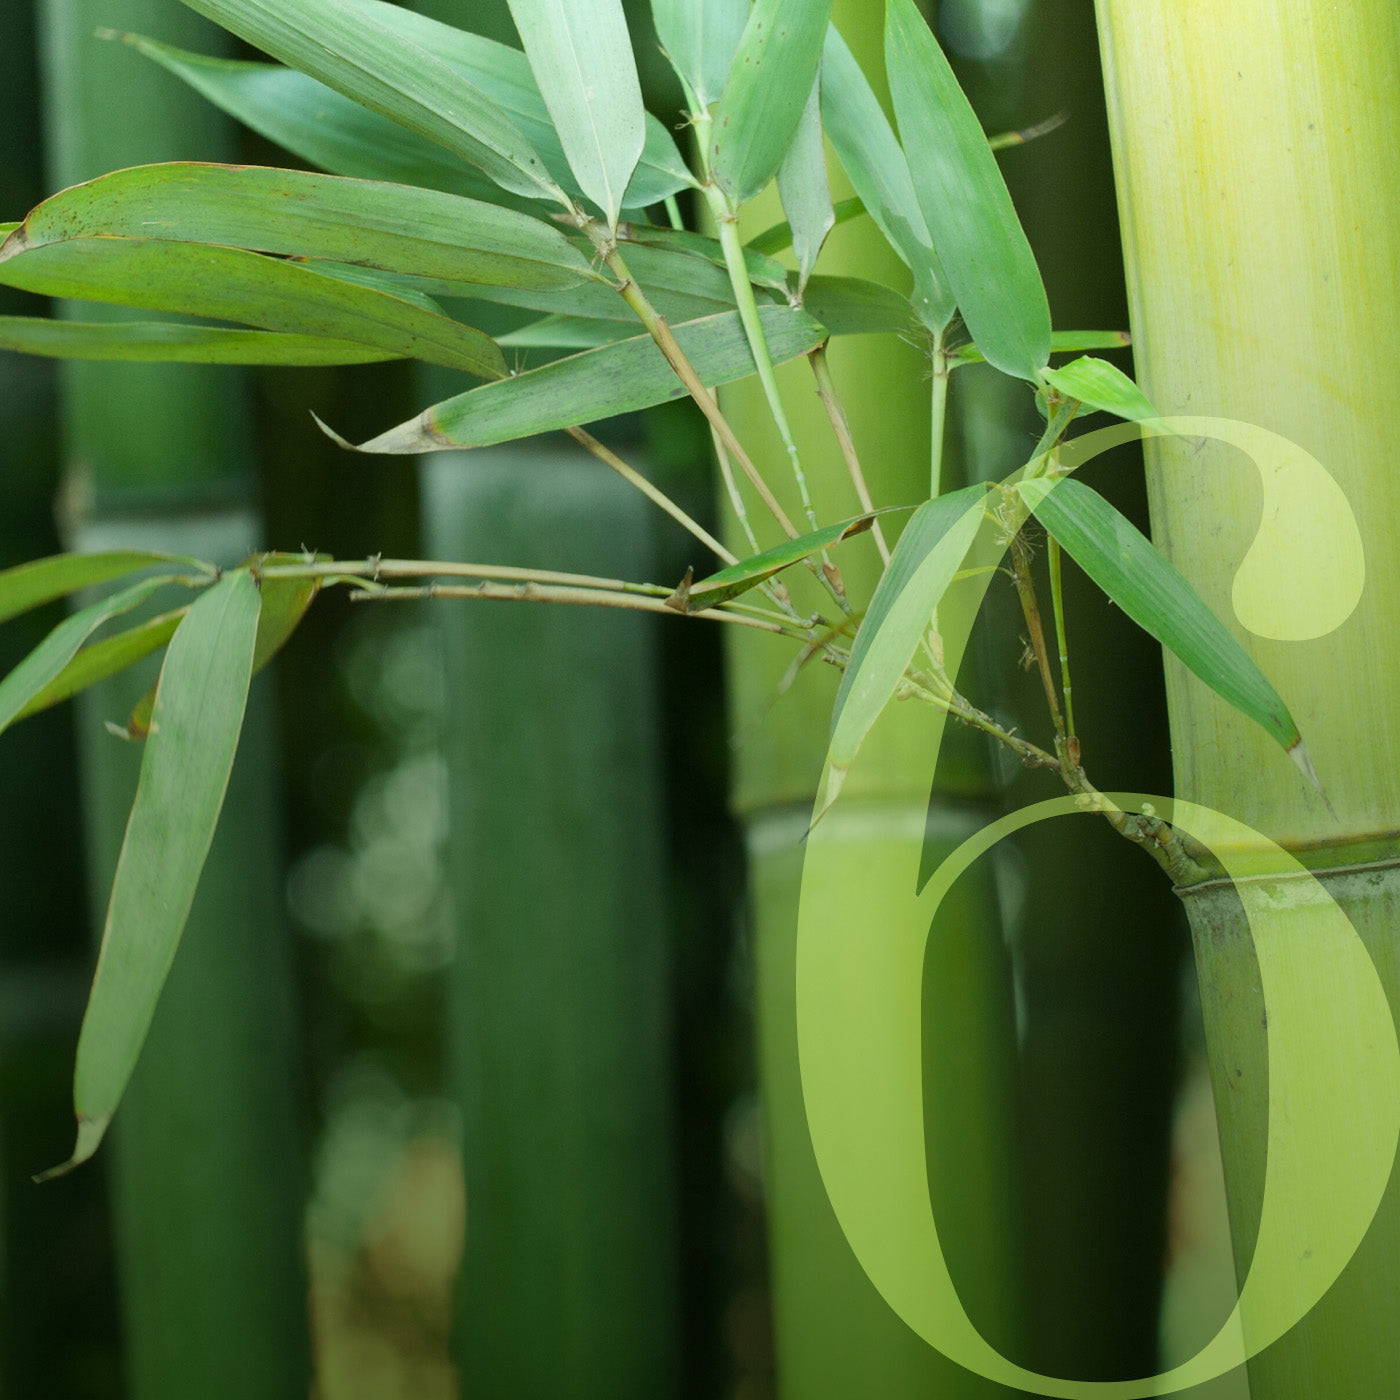 Bamboo ferment